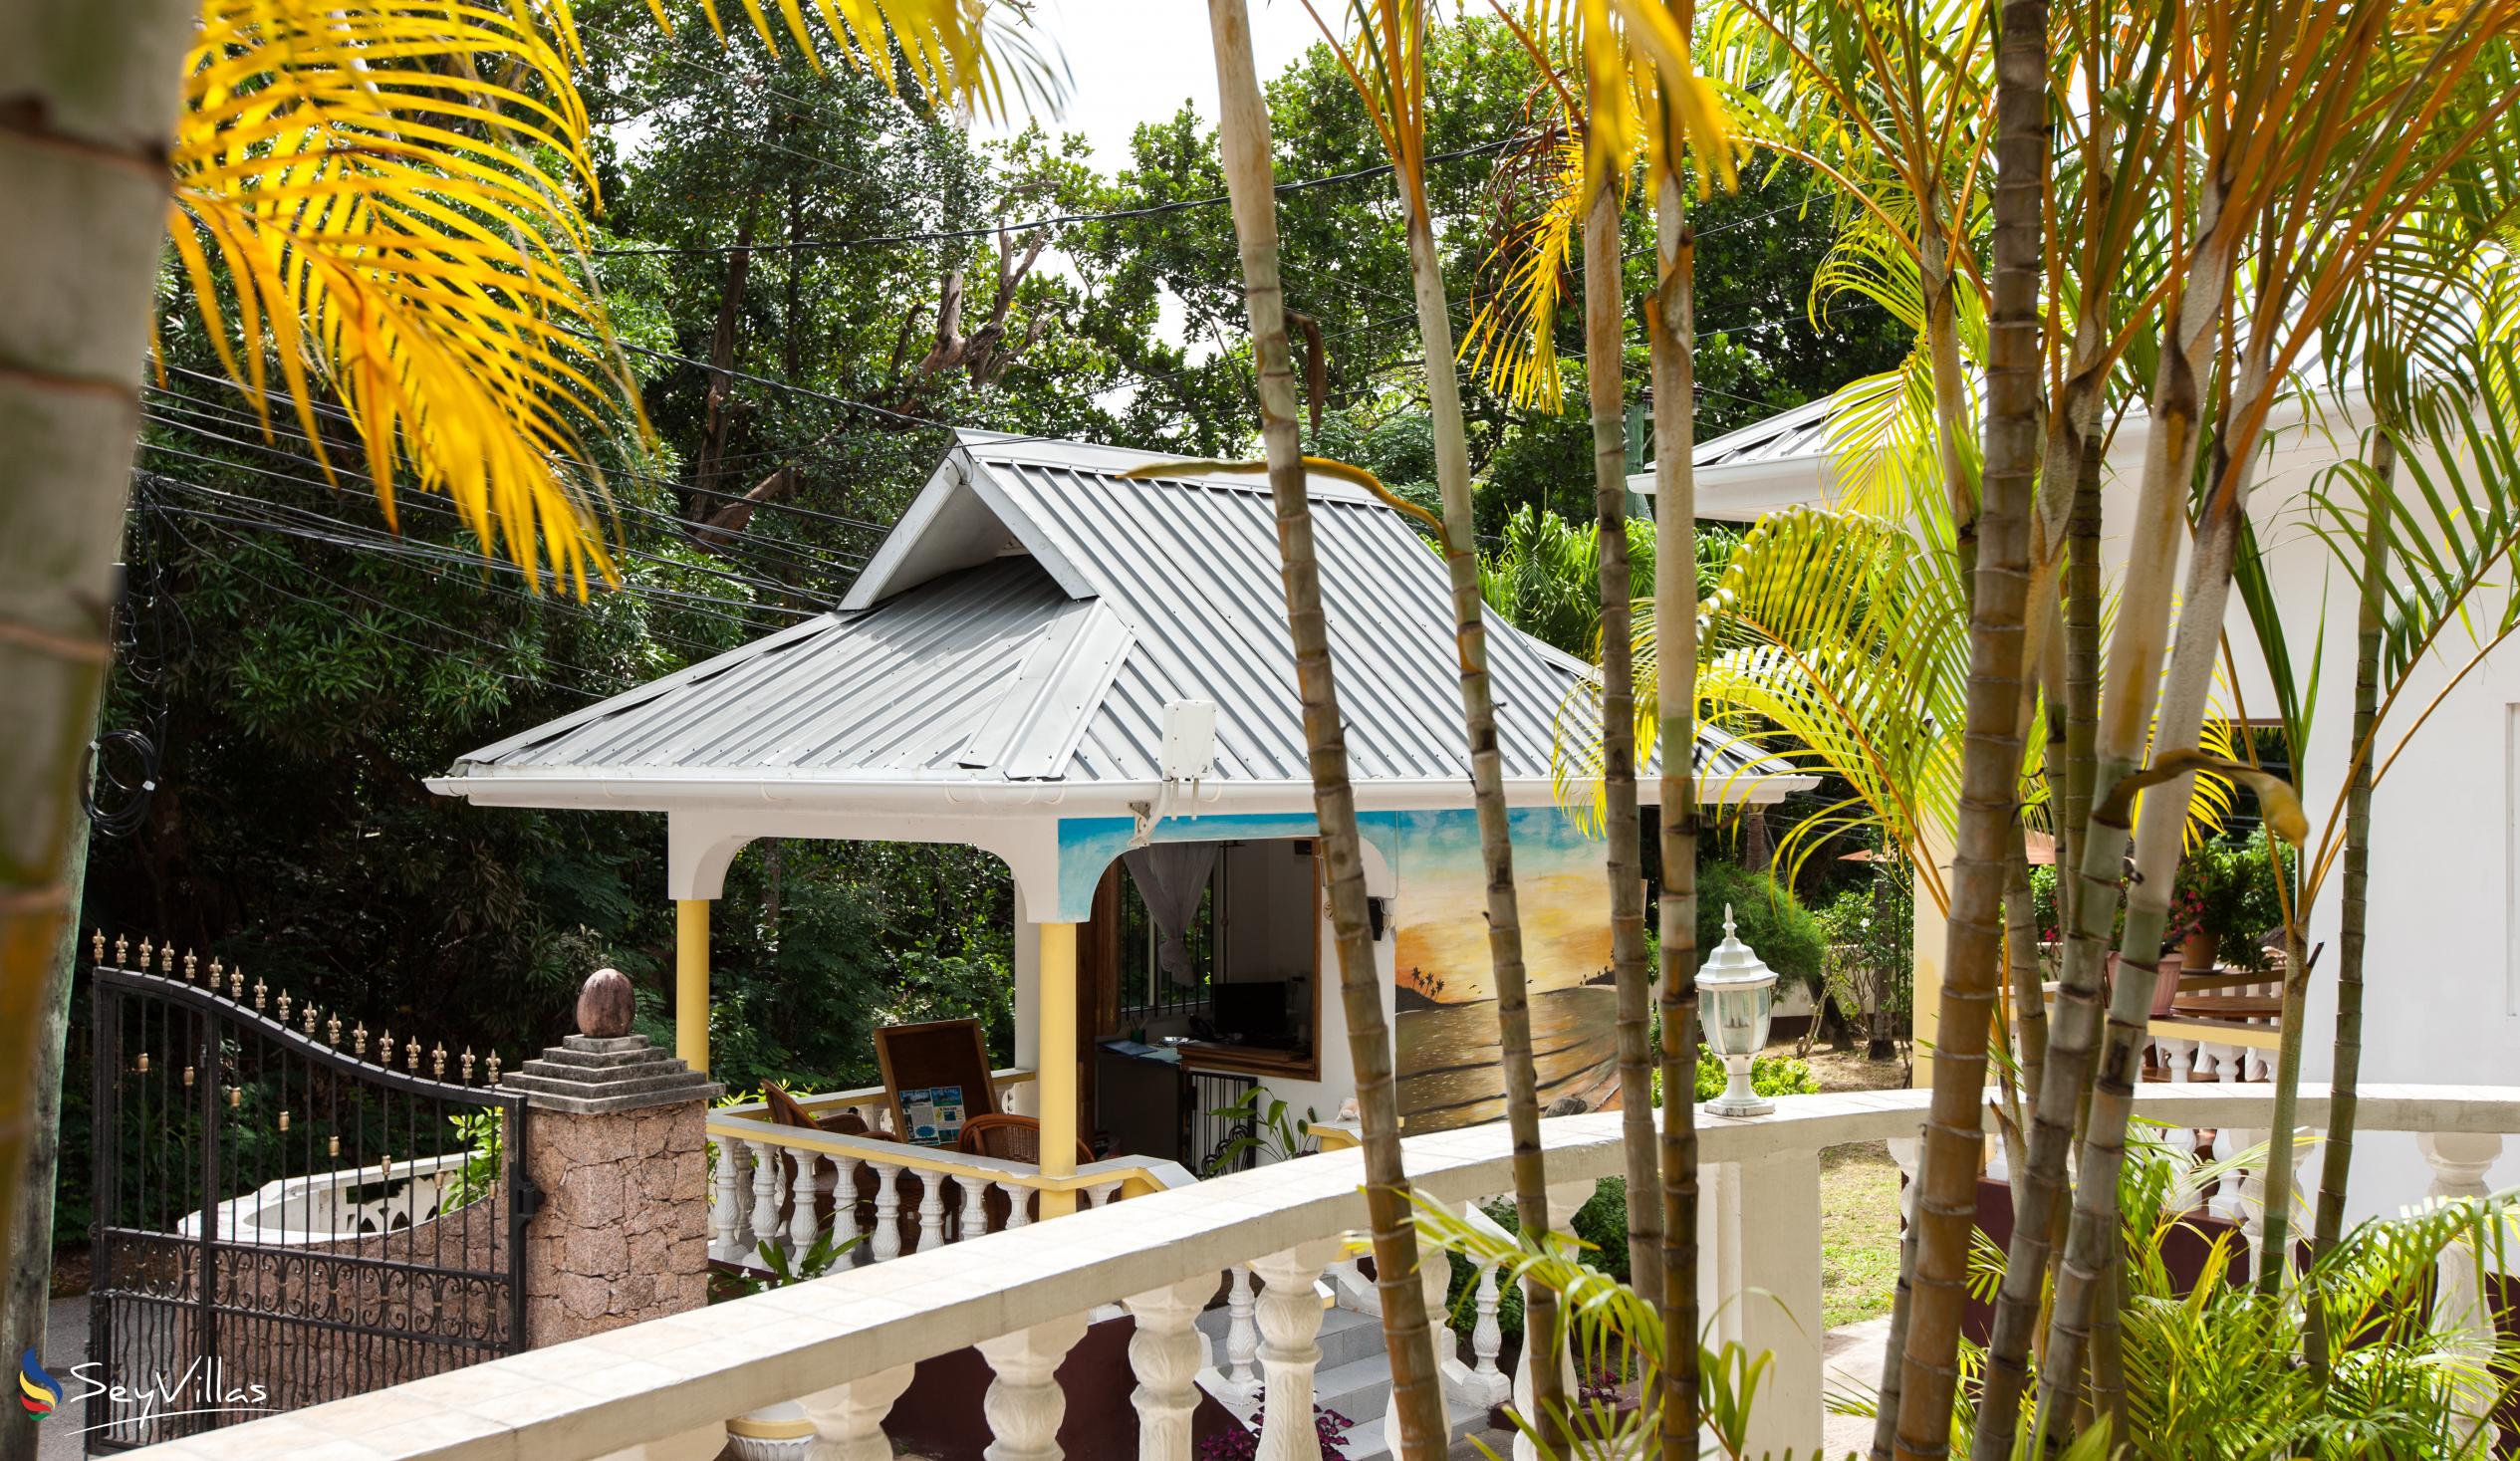 Photo 6: Acquario Villa - Outdoor area - Praslin (Seychelles)